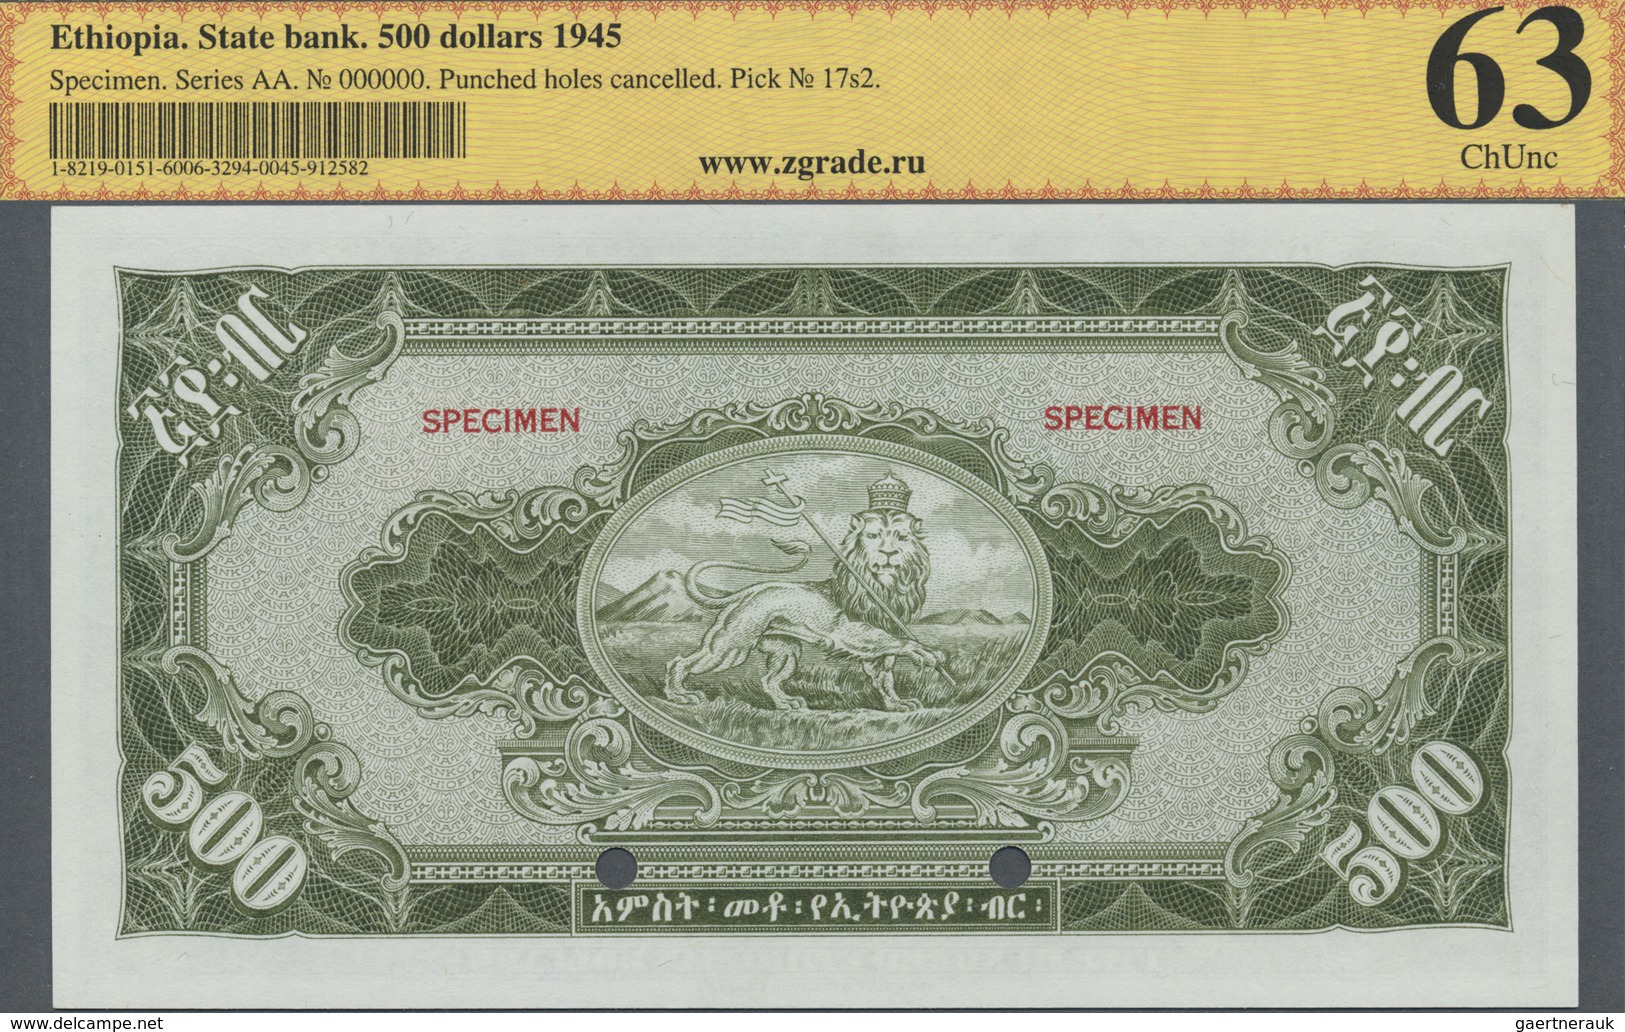 Ethiopia / Äthiopien: 500 Dollars 1945 SPECIMEN, P.17s2 In Perfect Condition, ZG Graded 63 ChUnc - Ethiopia